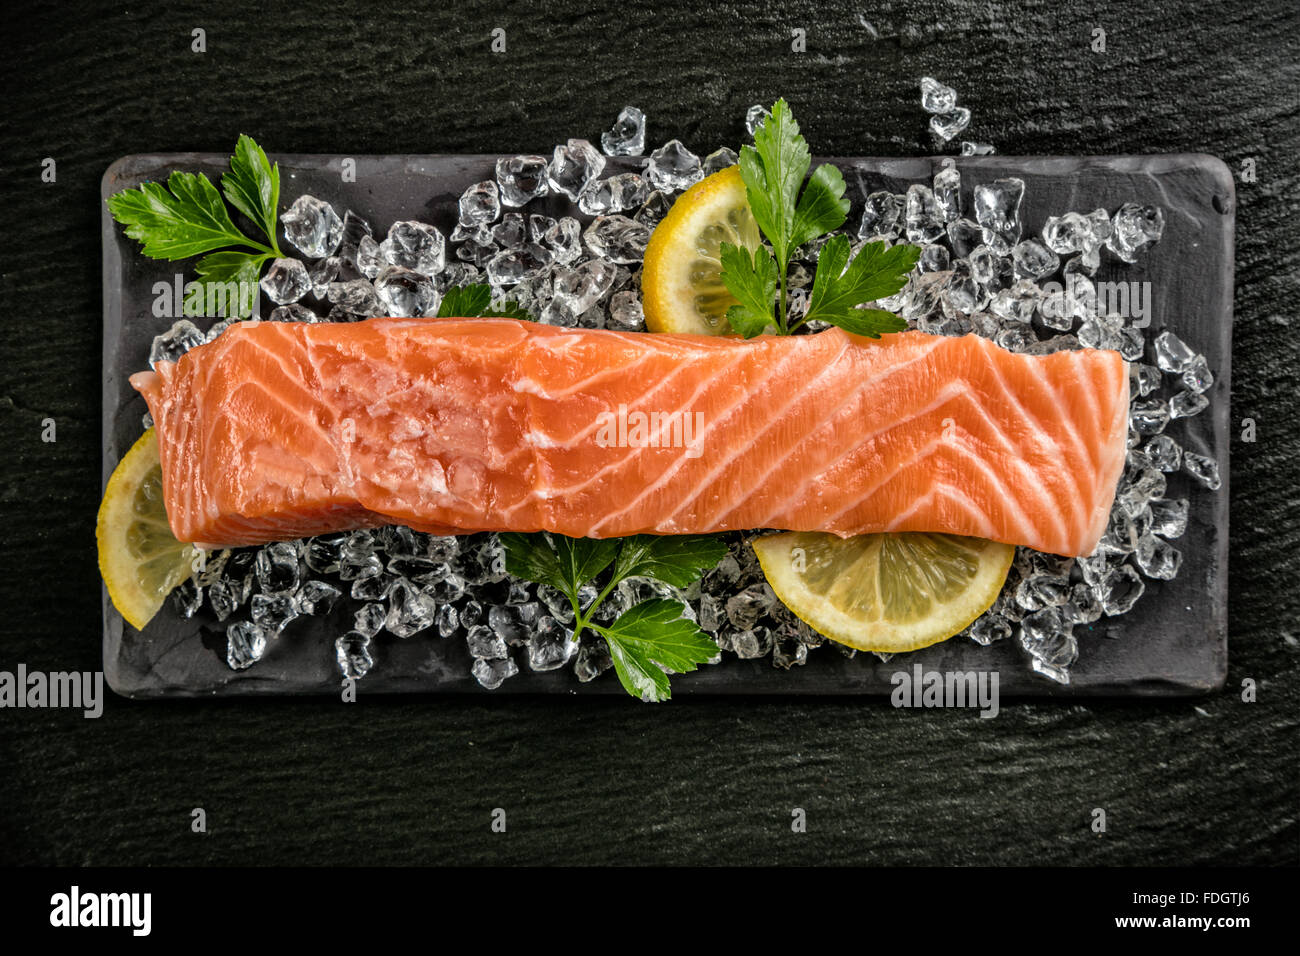 Salmon filet served on black stone Stock Photo